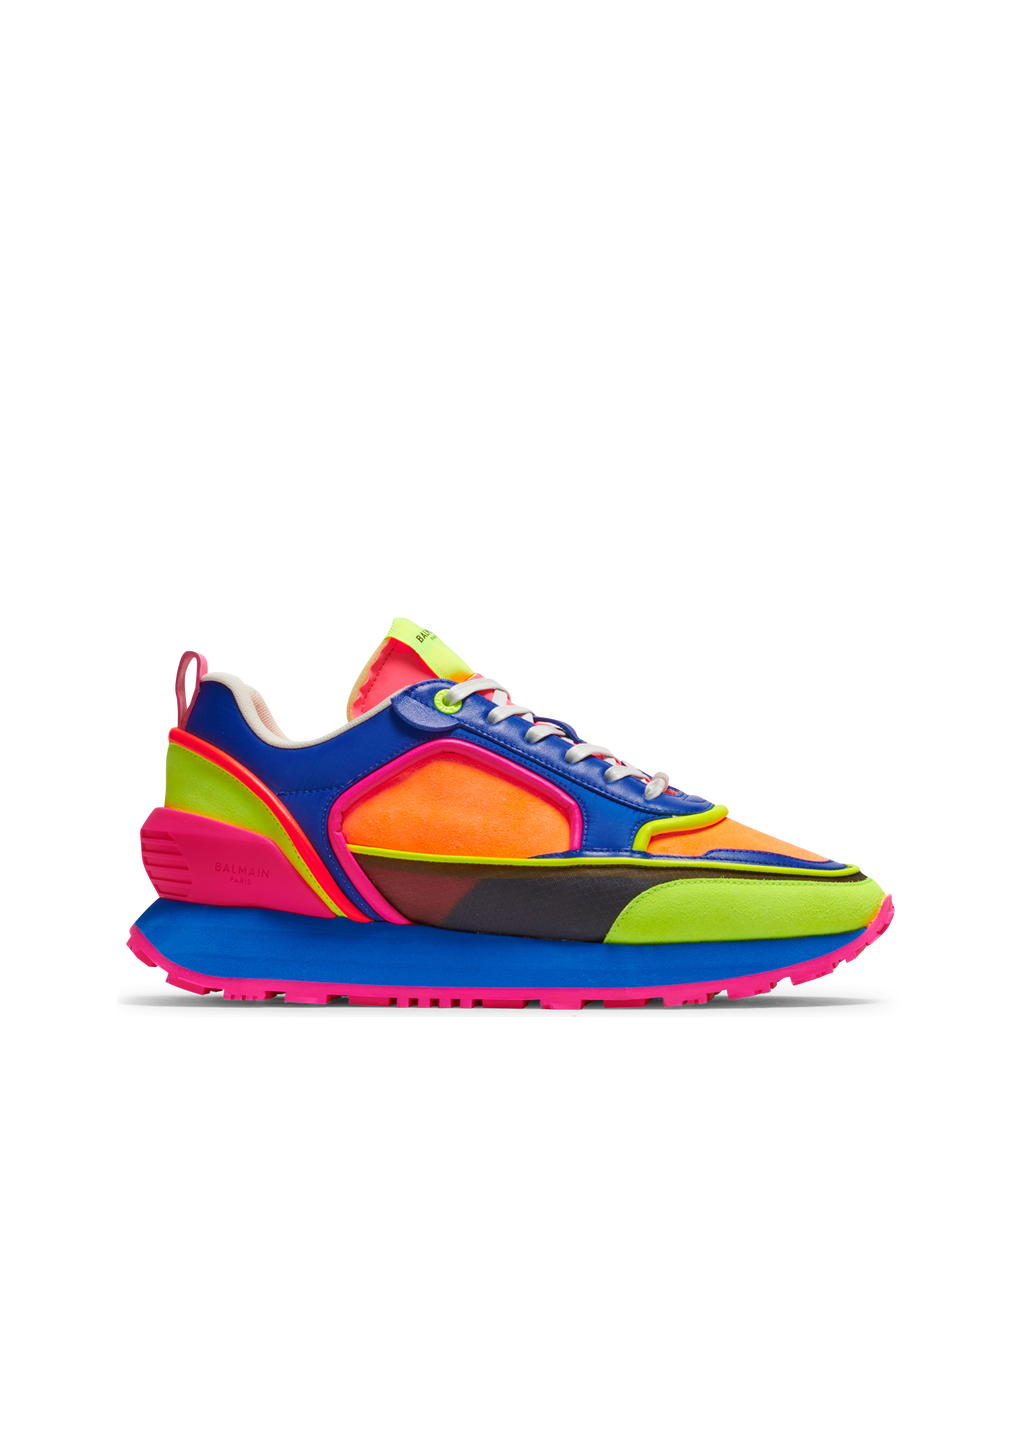 Sneakers Racer multicolor in camoscio, nylon e mesh, multicolore, hi-res